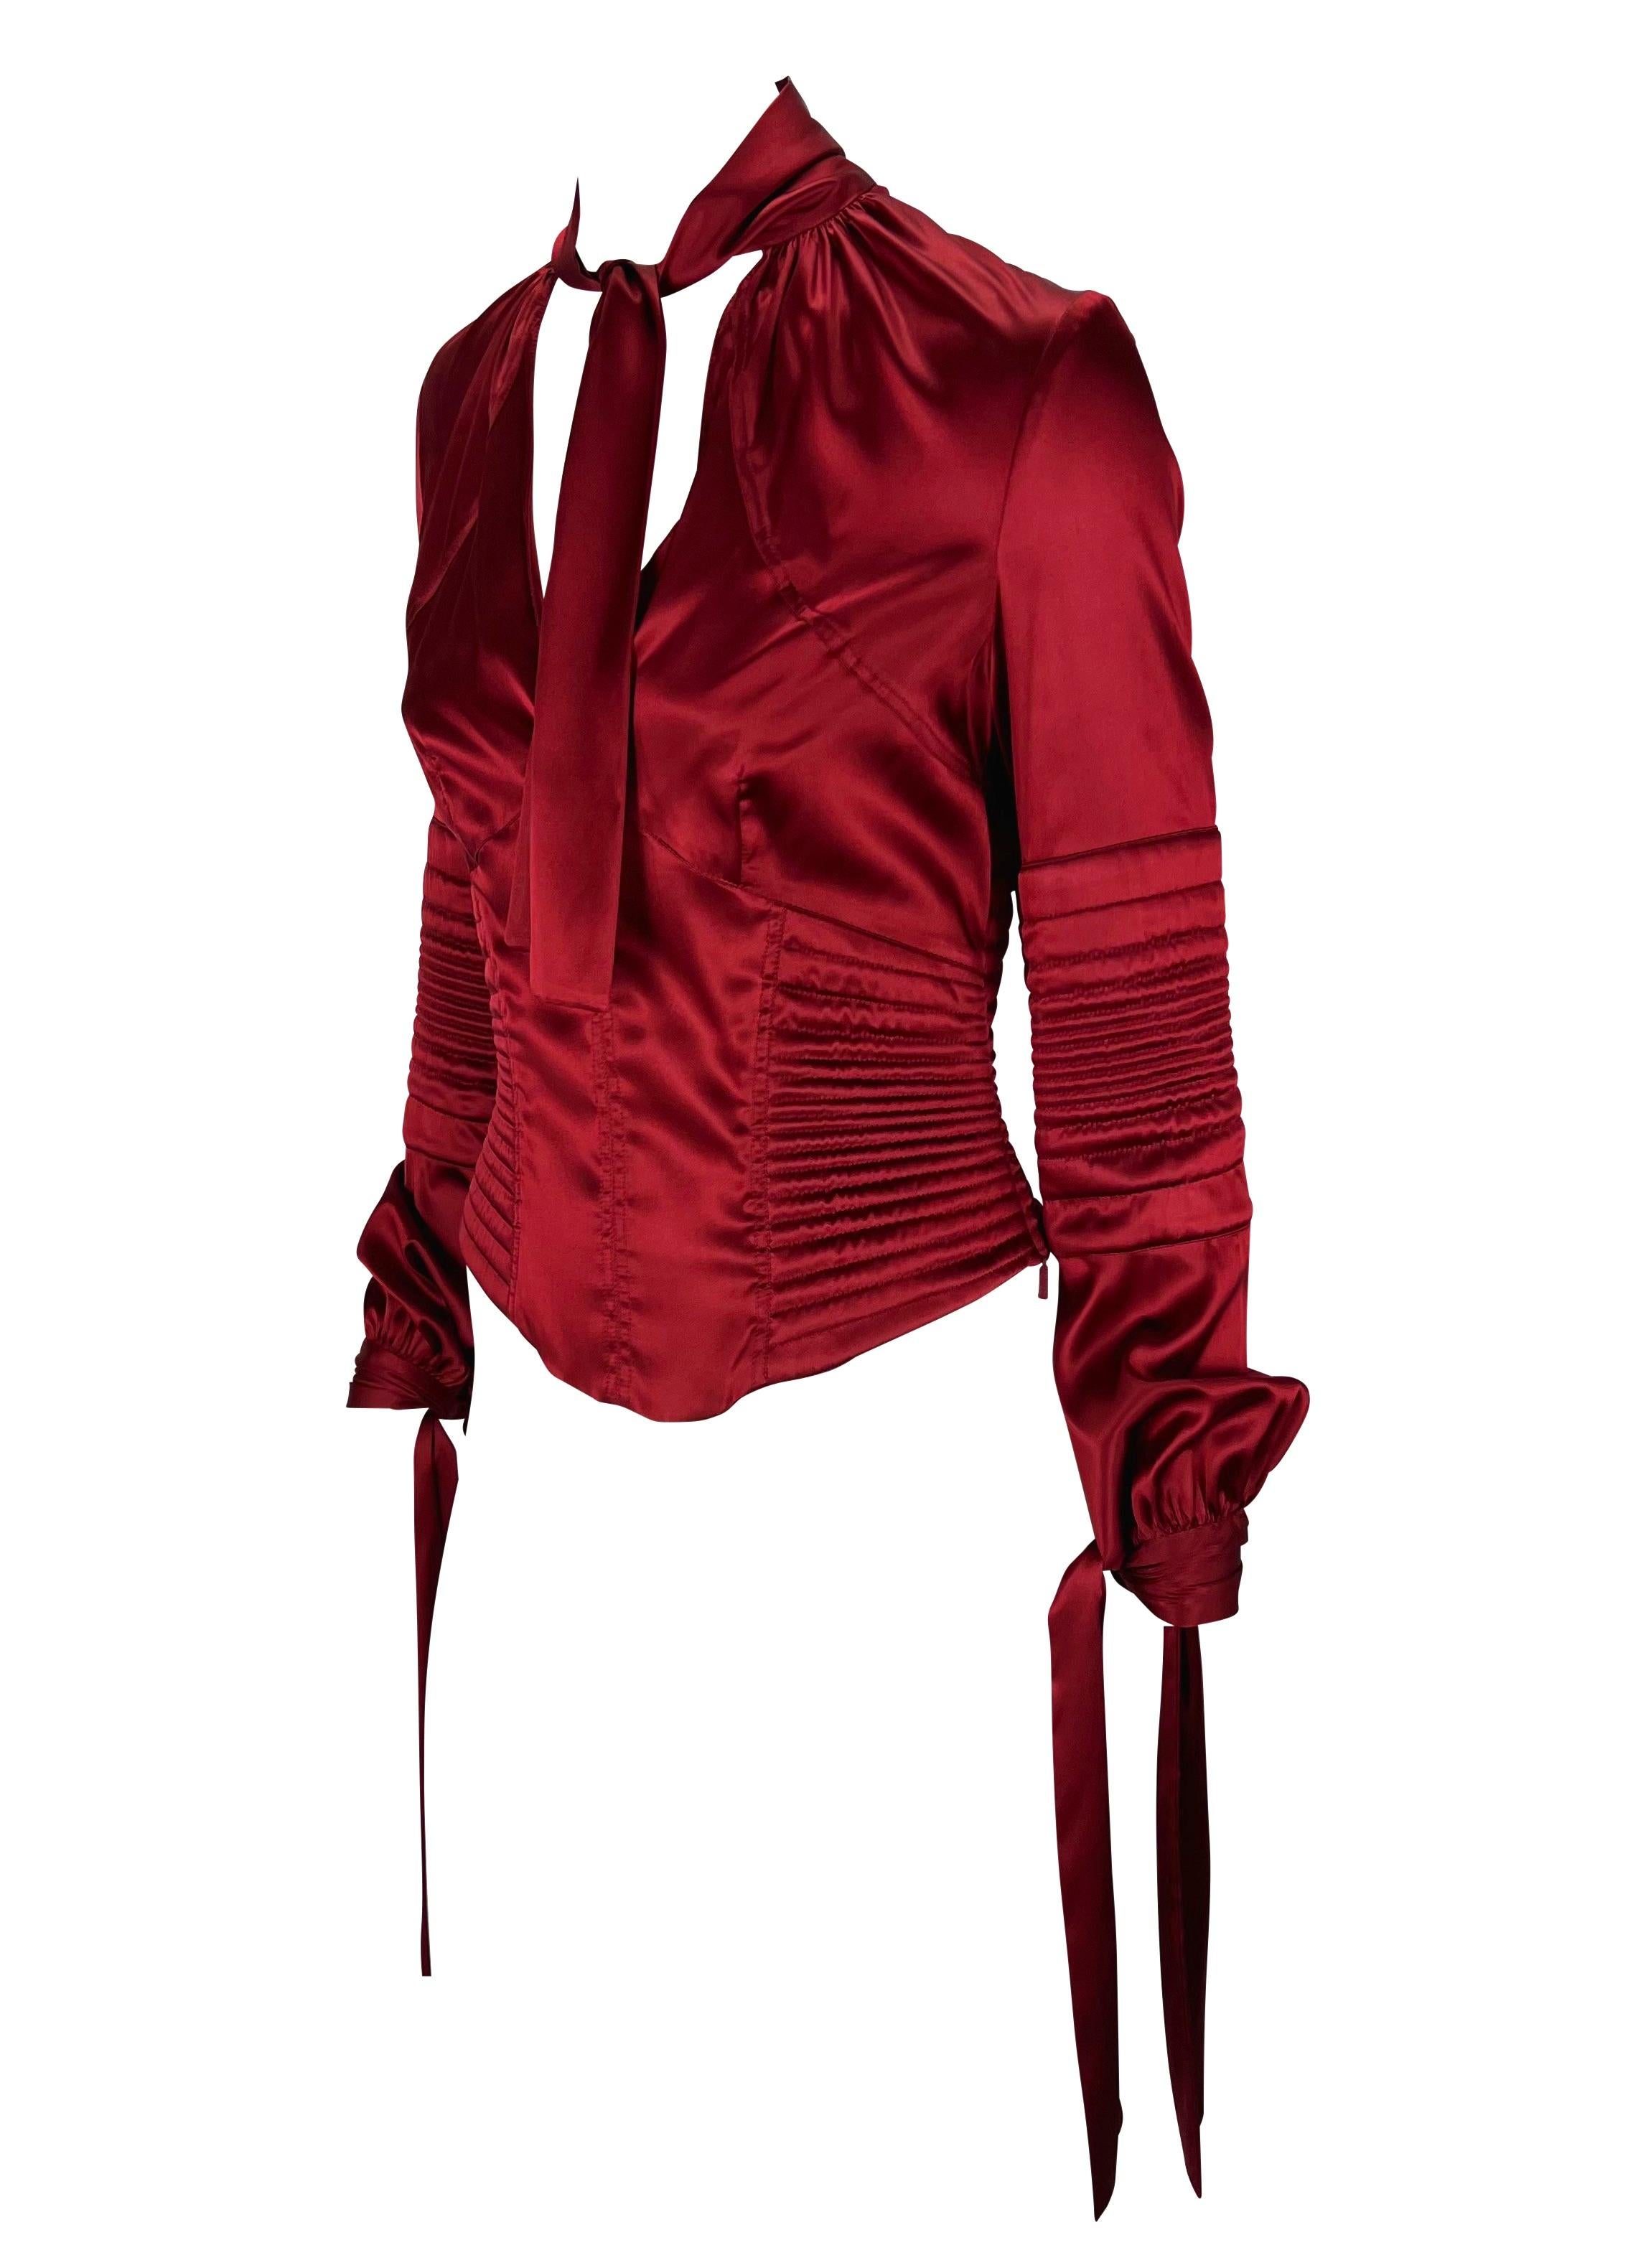 Wir präsentieren eine leuchtend rote Gucci Bluse aus Seidensatin, entworfen von Tom Ford. Dieses wunderschöne Oberteil aus der Herbst/Winter-Kollektion 2003 zeichnet sich durch gesteppte Details am Körper aus, die eine Korsett-Silhouette schaffen.